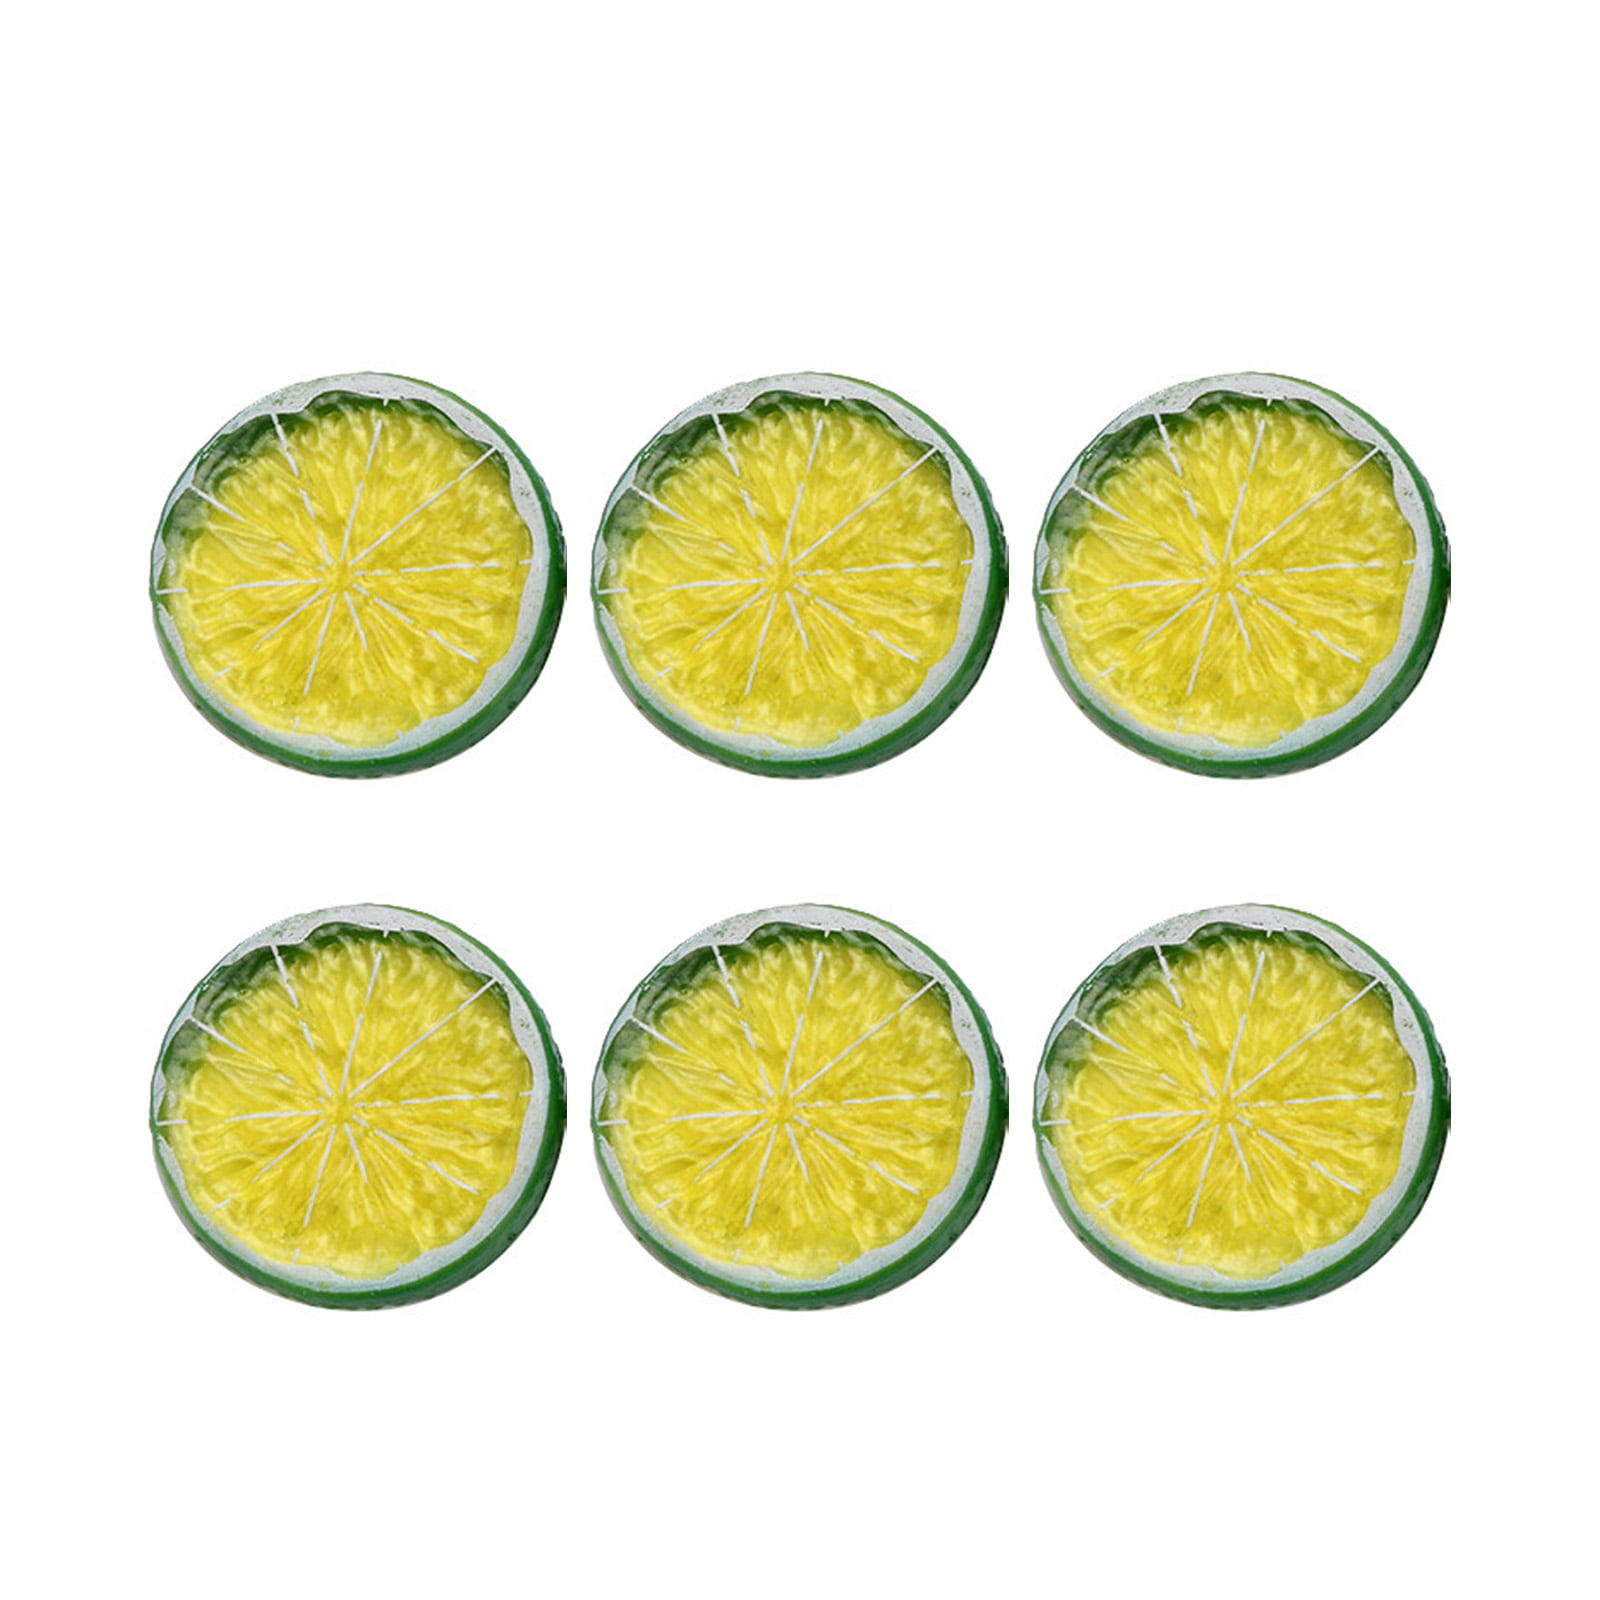 6pcs Artificial Plastic Limes Lemons Fake Fruit Realistic Home Decor Props 